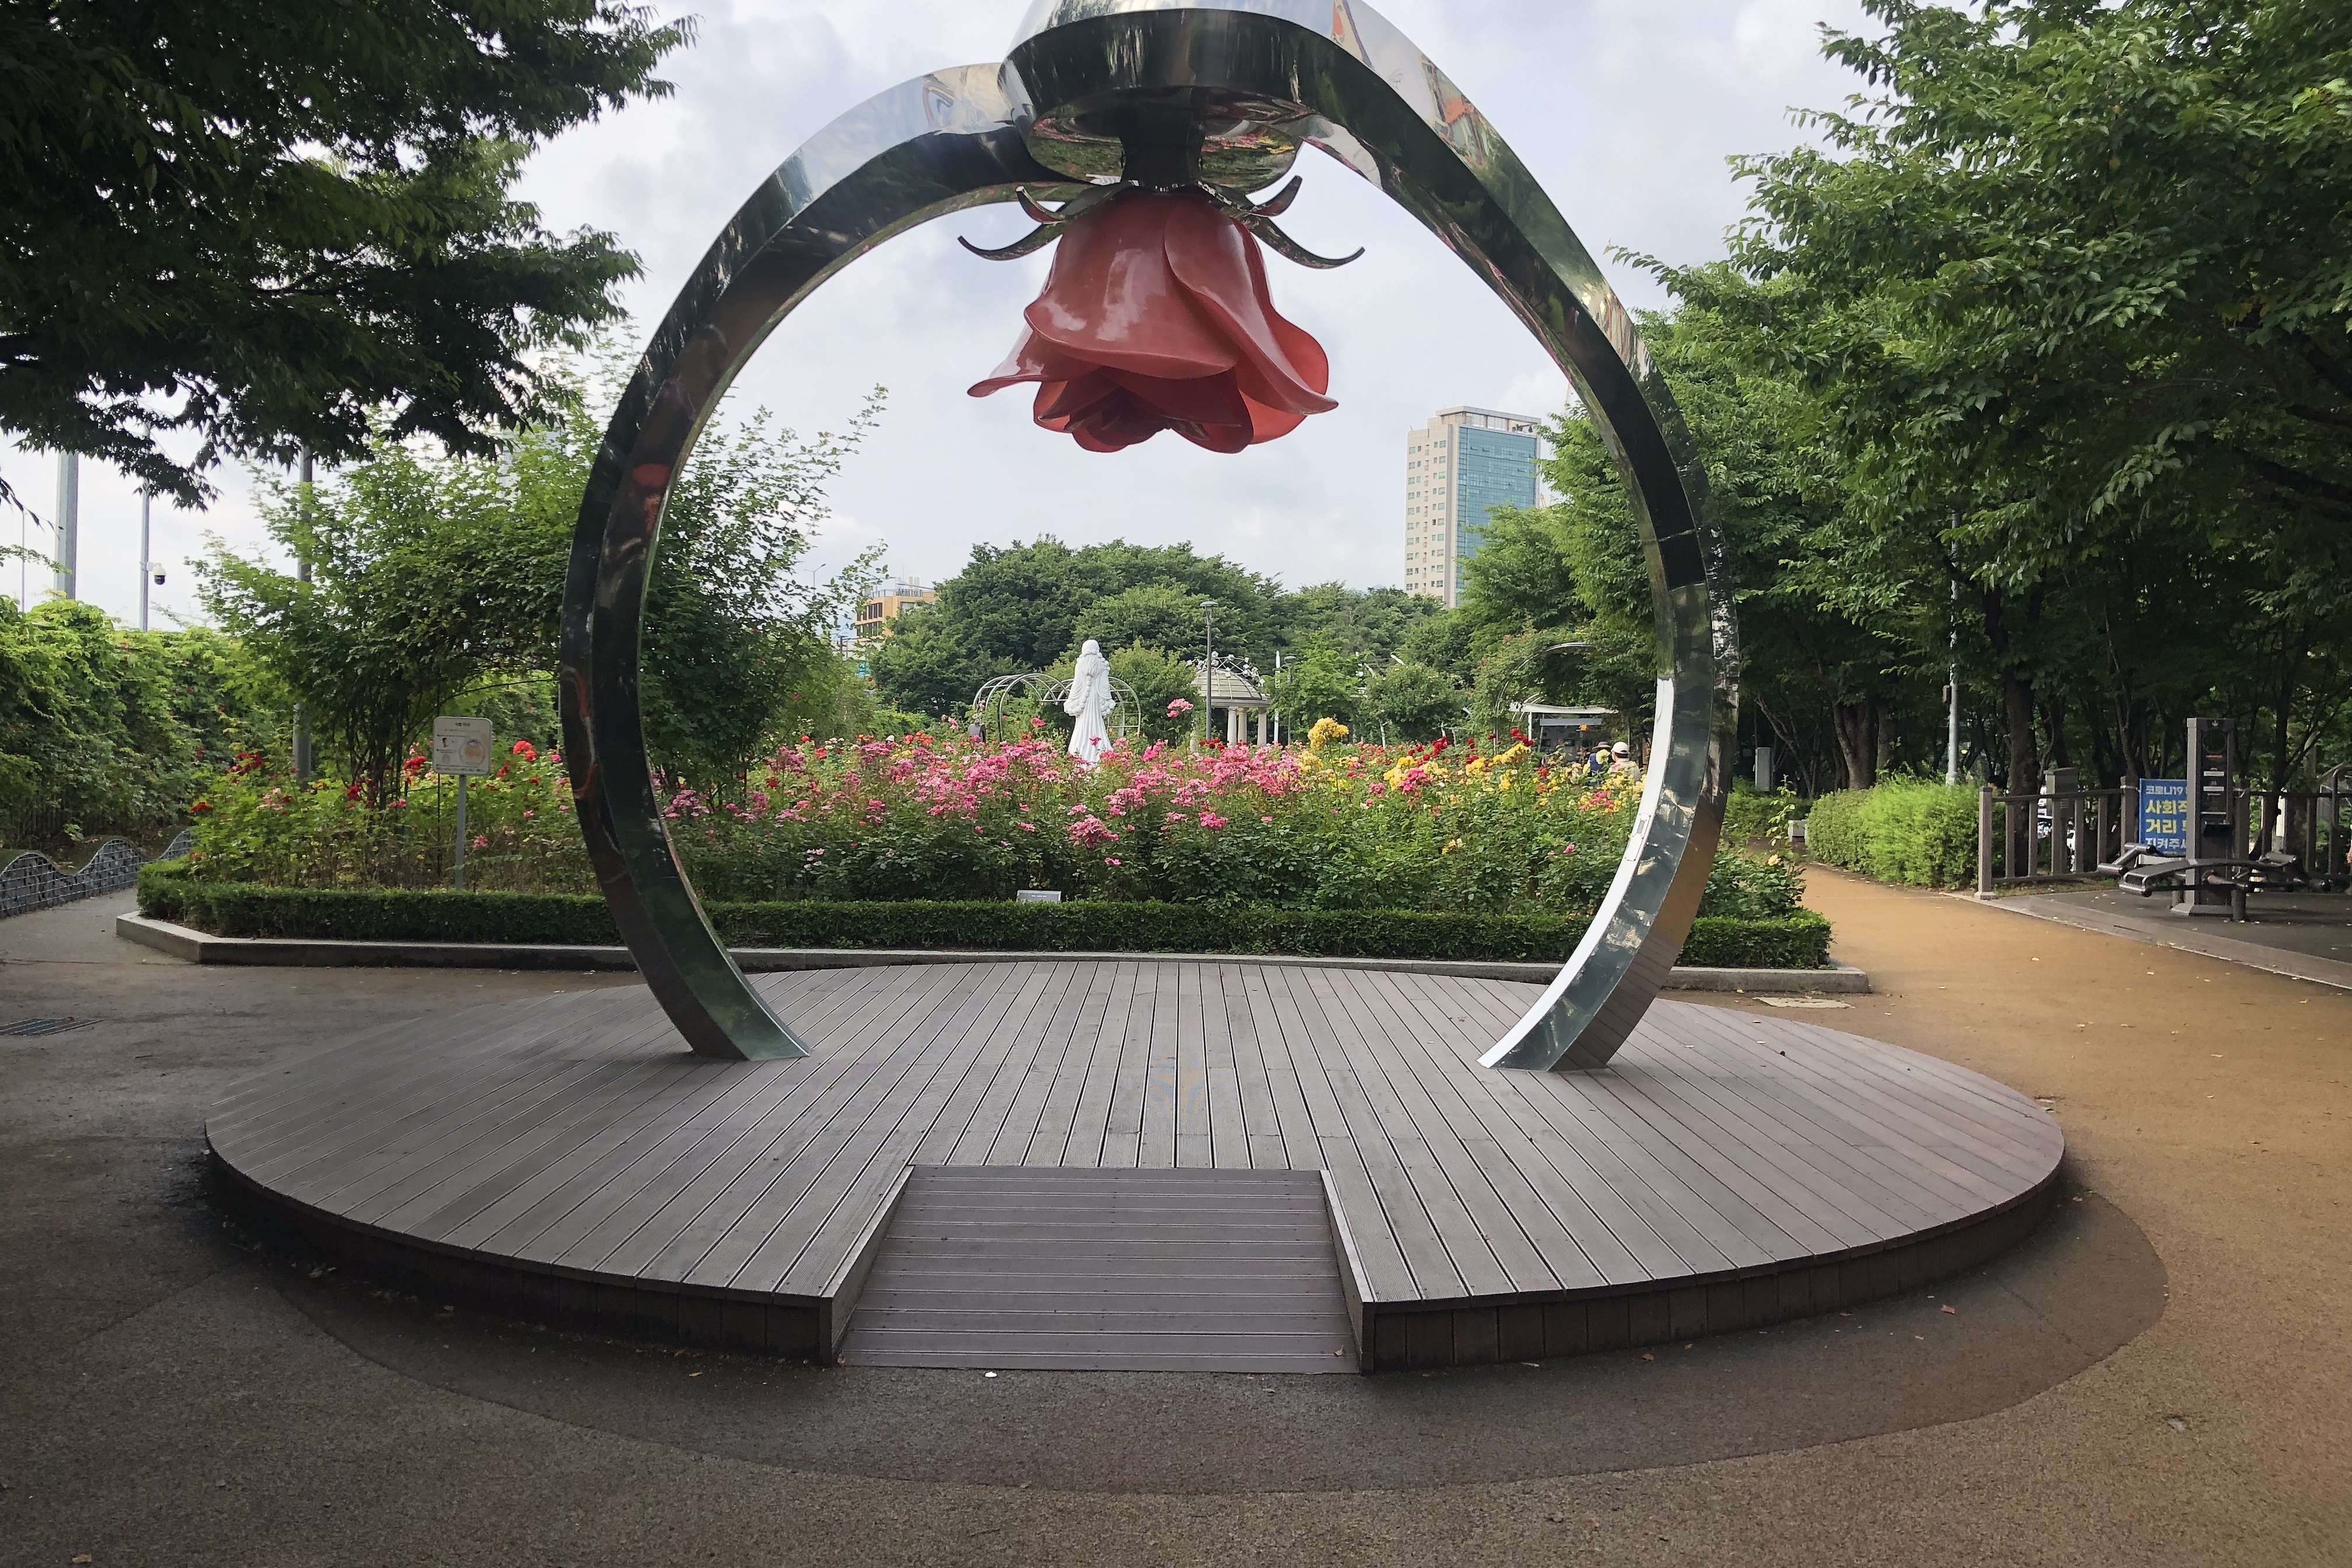 Seoul Rose Park (Jungnang Rose Park)2 : Rose-shaped sculpture inside Seoul Rose Park (Jungnang Rose Park) 2